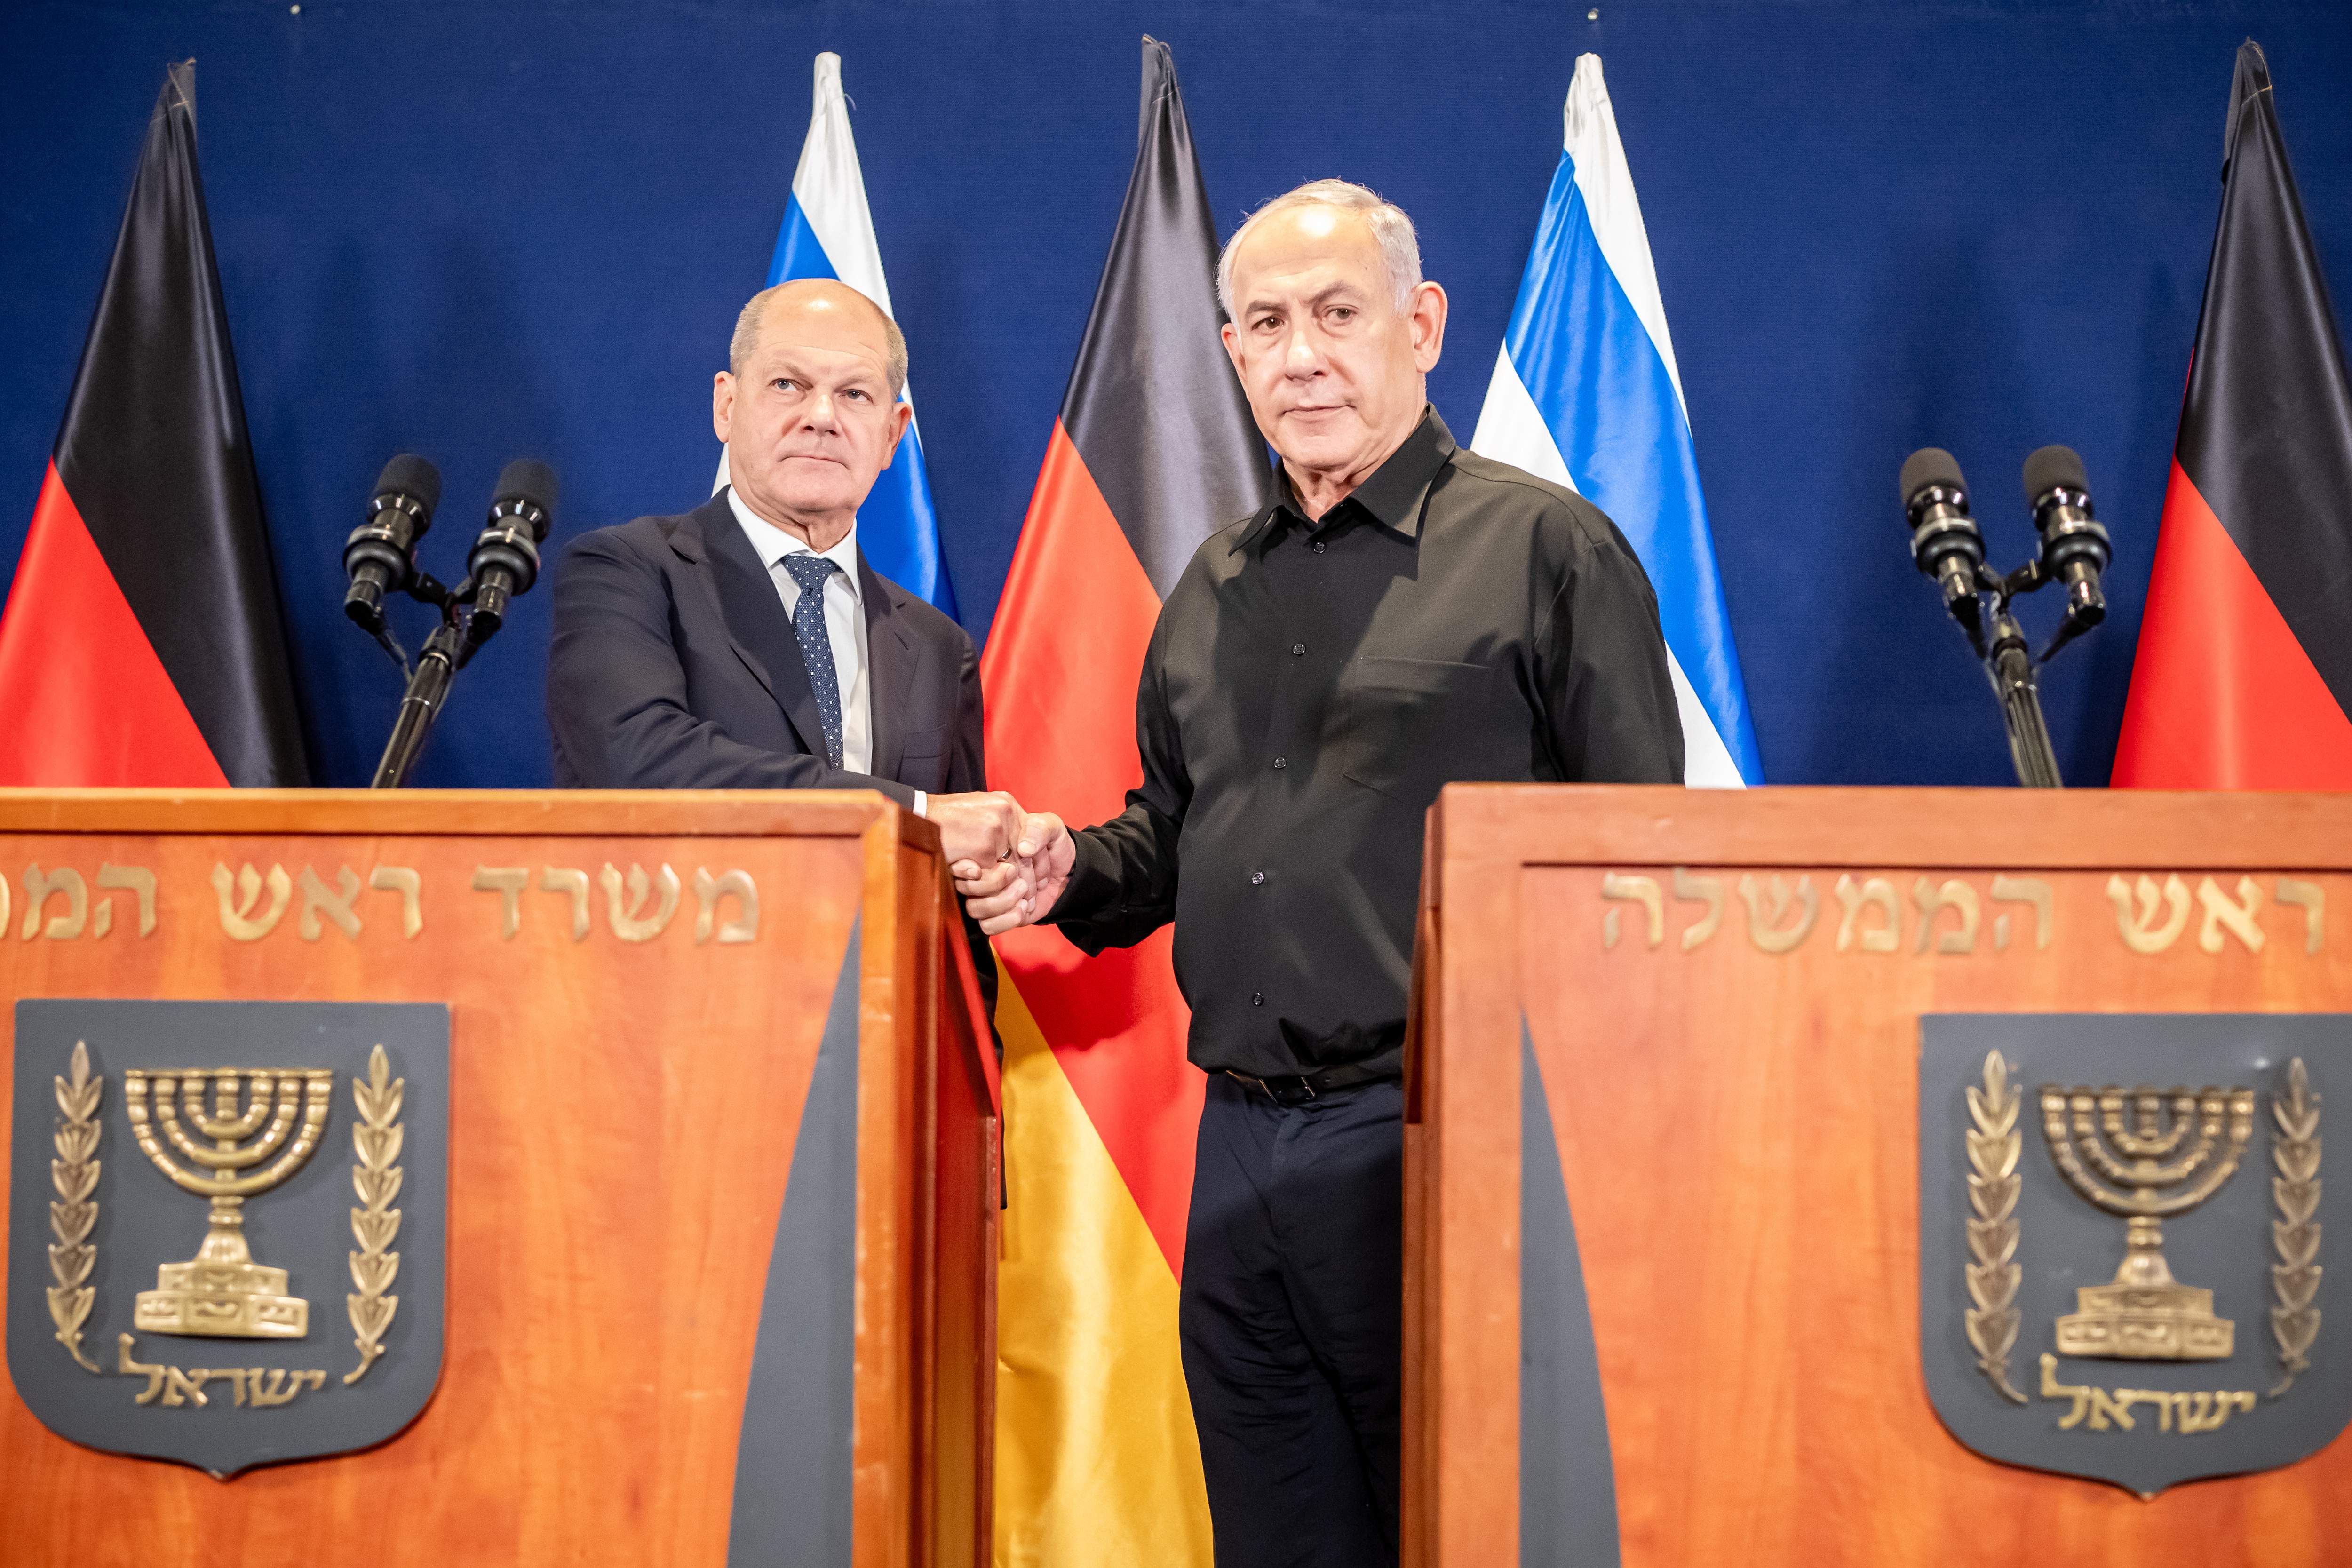 El Tribunal de la Haia avala la venda d'armes d'Alemanya a Israel malgrat el risc de genocidi